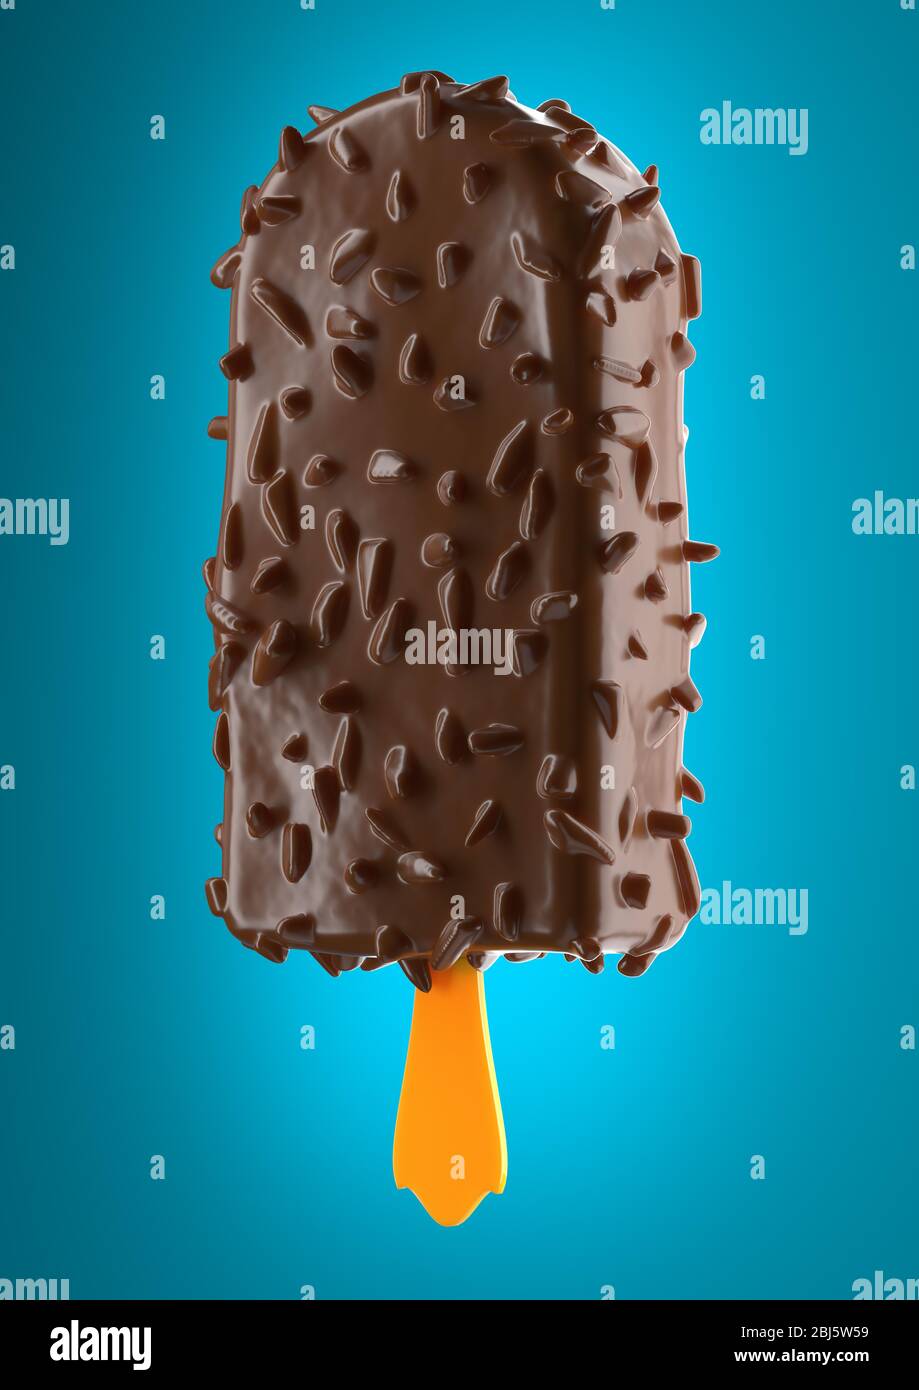 Tasty Chocolate ice cream isolated on blue background Stock Photo - Alamy